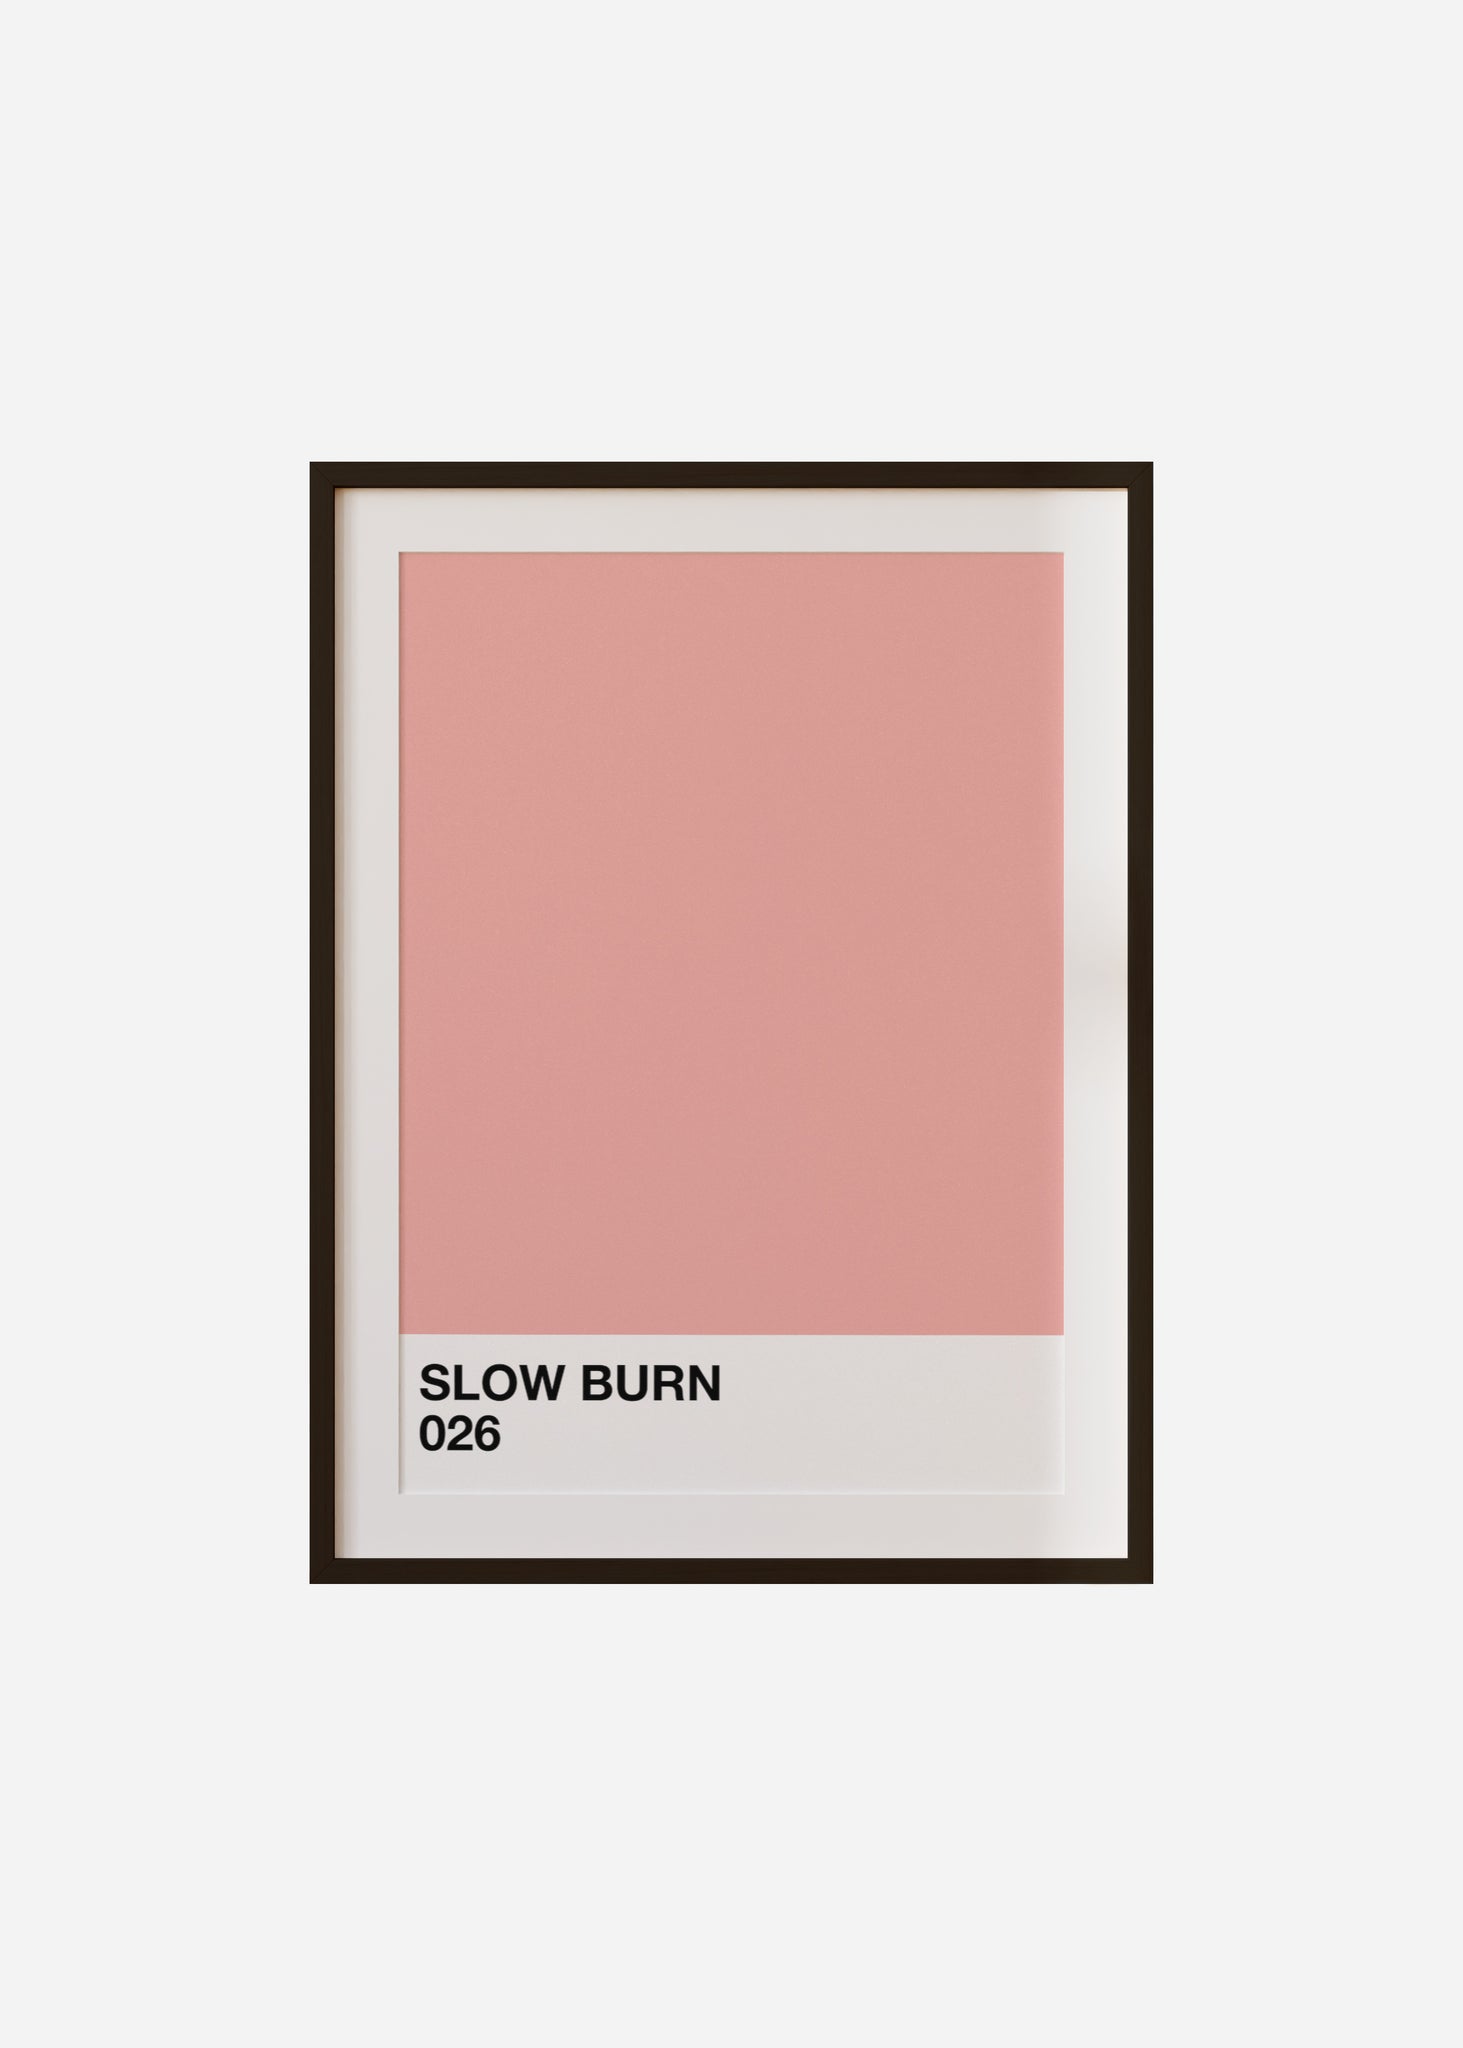 slow burn Framed & Mounted Print